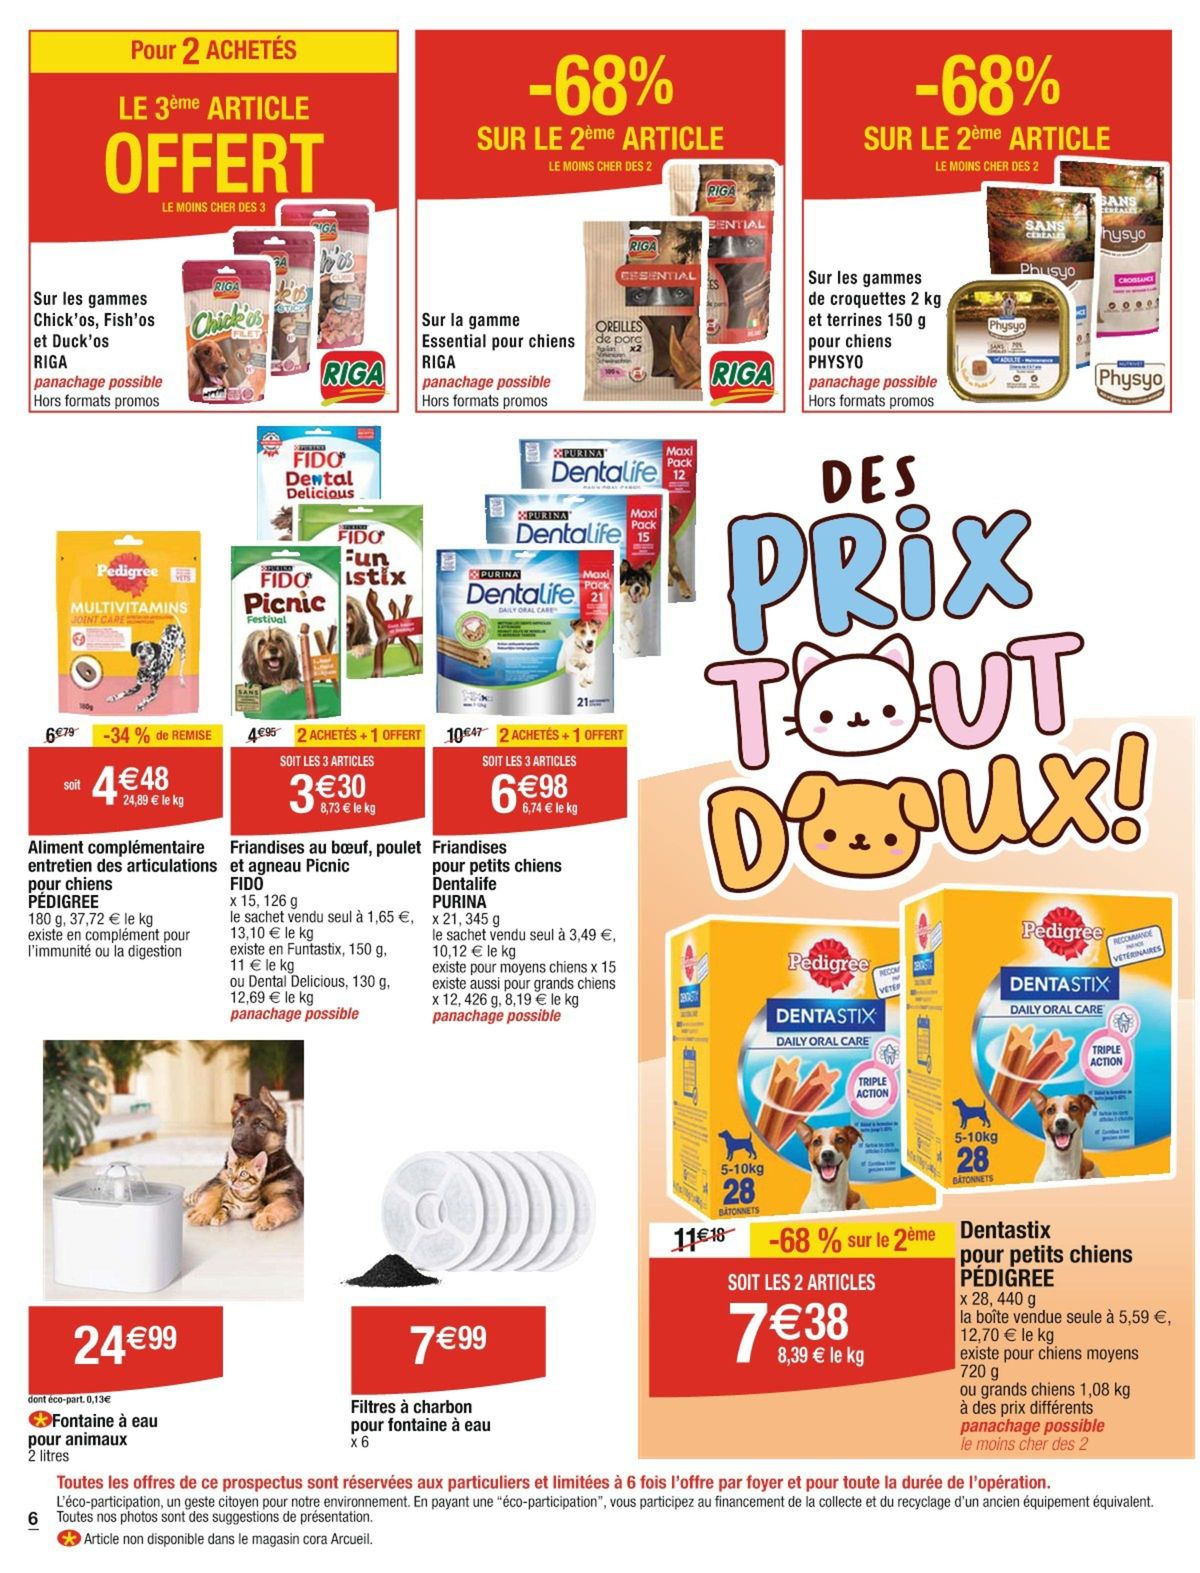 Catalogue Des prix tout doux !, page 00006